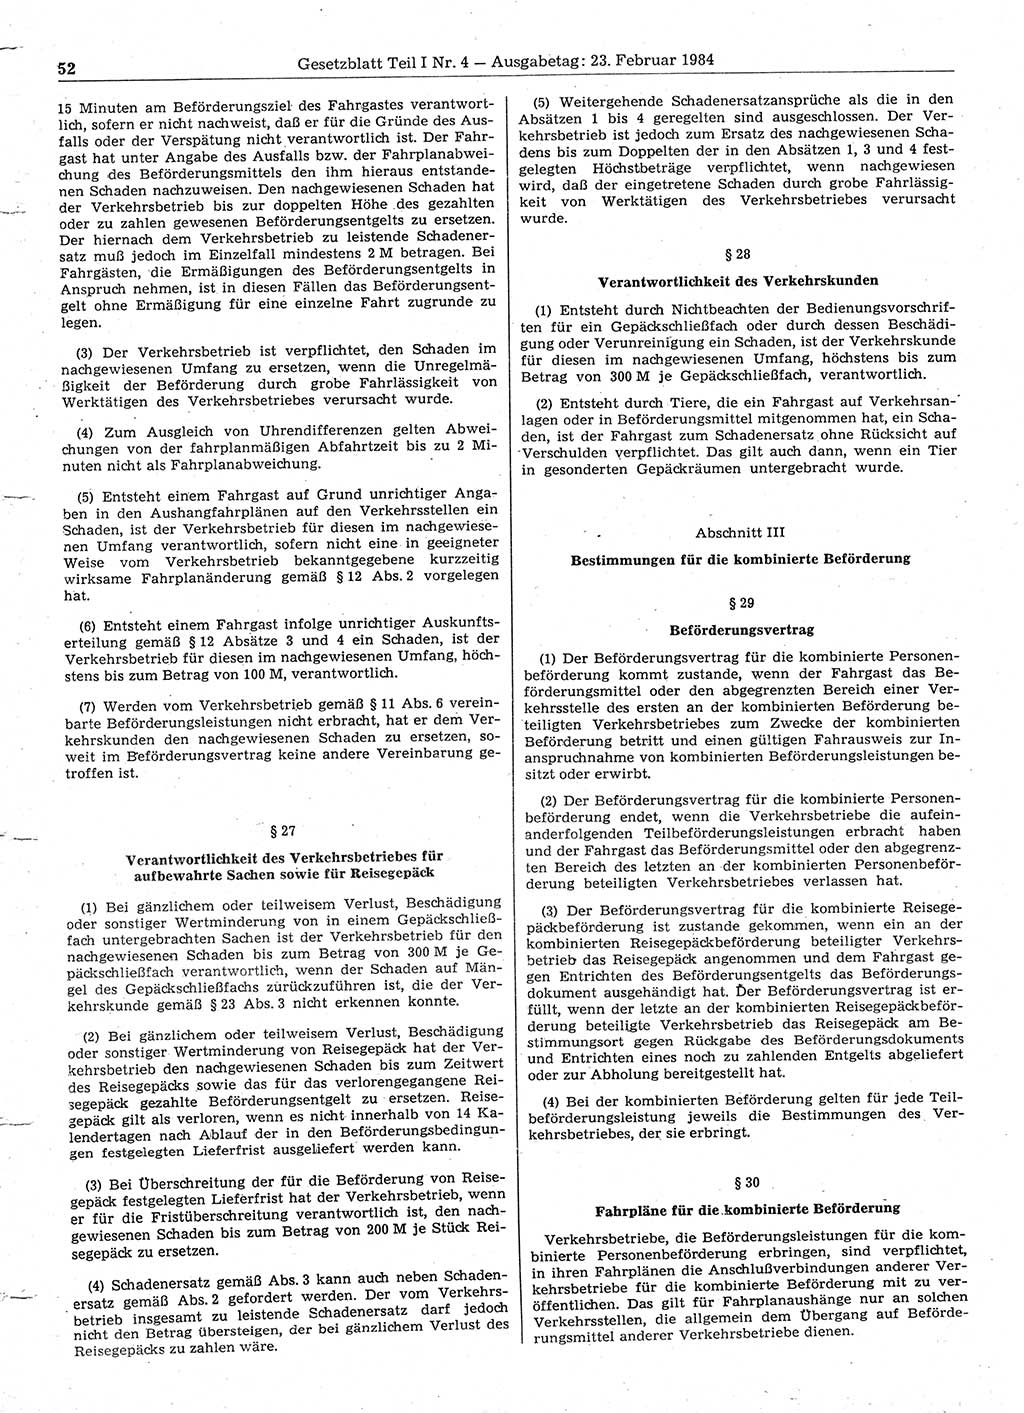 Gesetzblatt (GBl.) der Deutschen Demokratischen Republik (DDR) Teil Ⅰ 1984, Seite 52 (GBl. DDR Ⅰ 1984, S. 52)